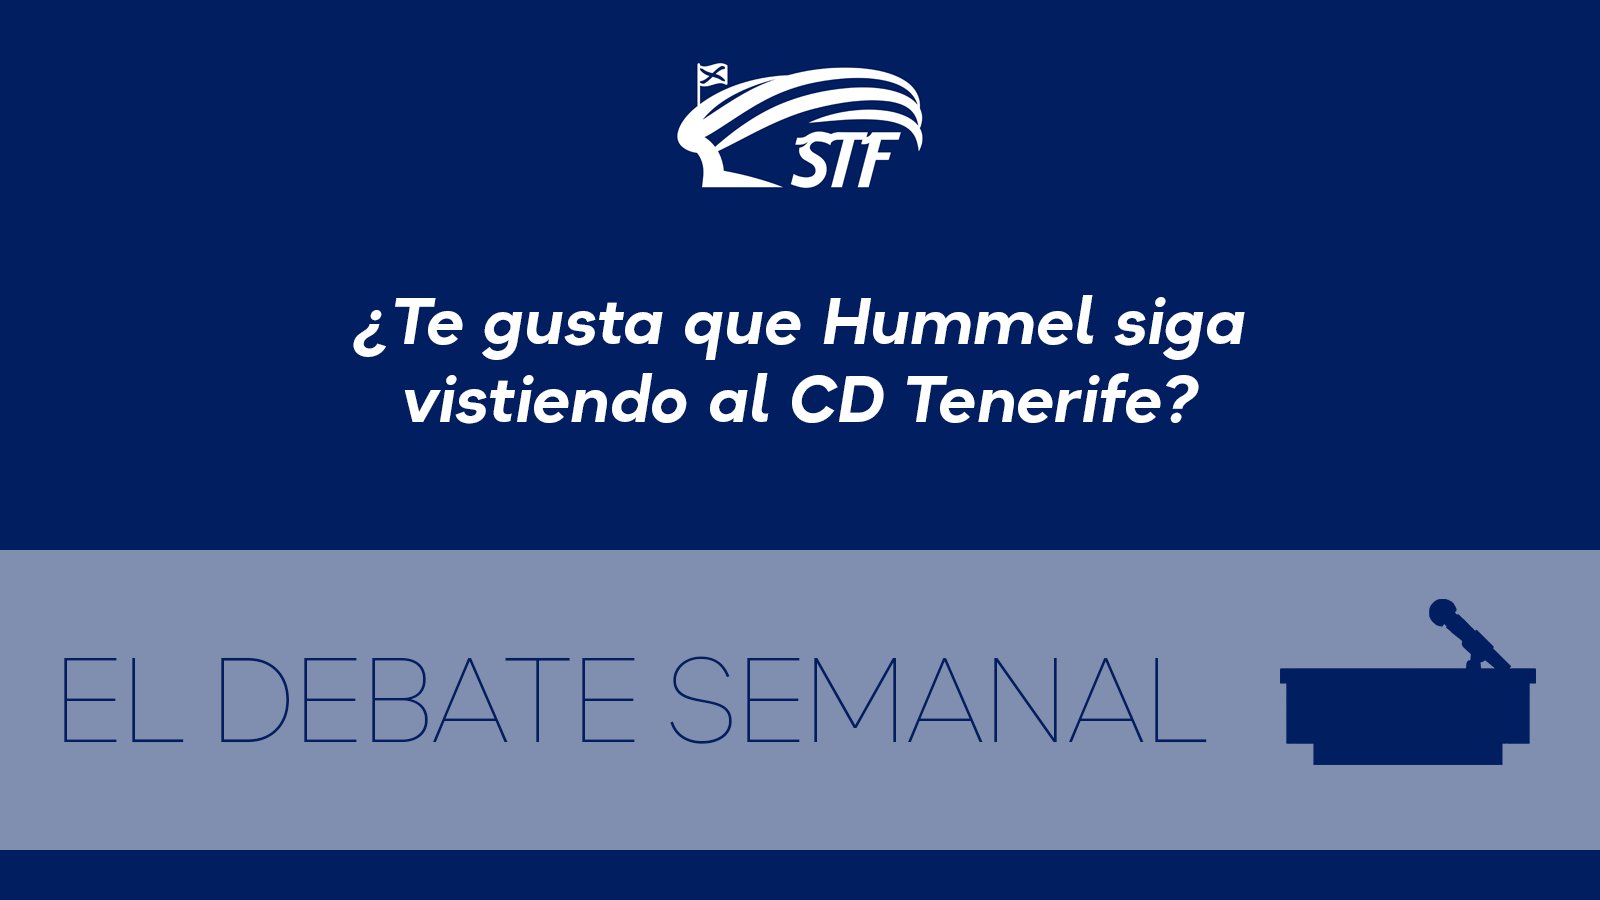 El Debate Semanal: ¿Te gusta que Hummel siga vistiendo al CD Tenerife? El 80,64 por ciento dice no